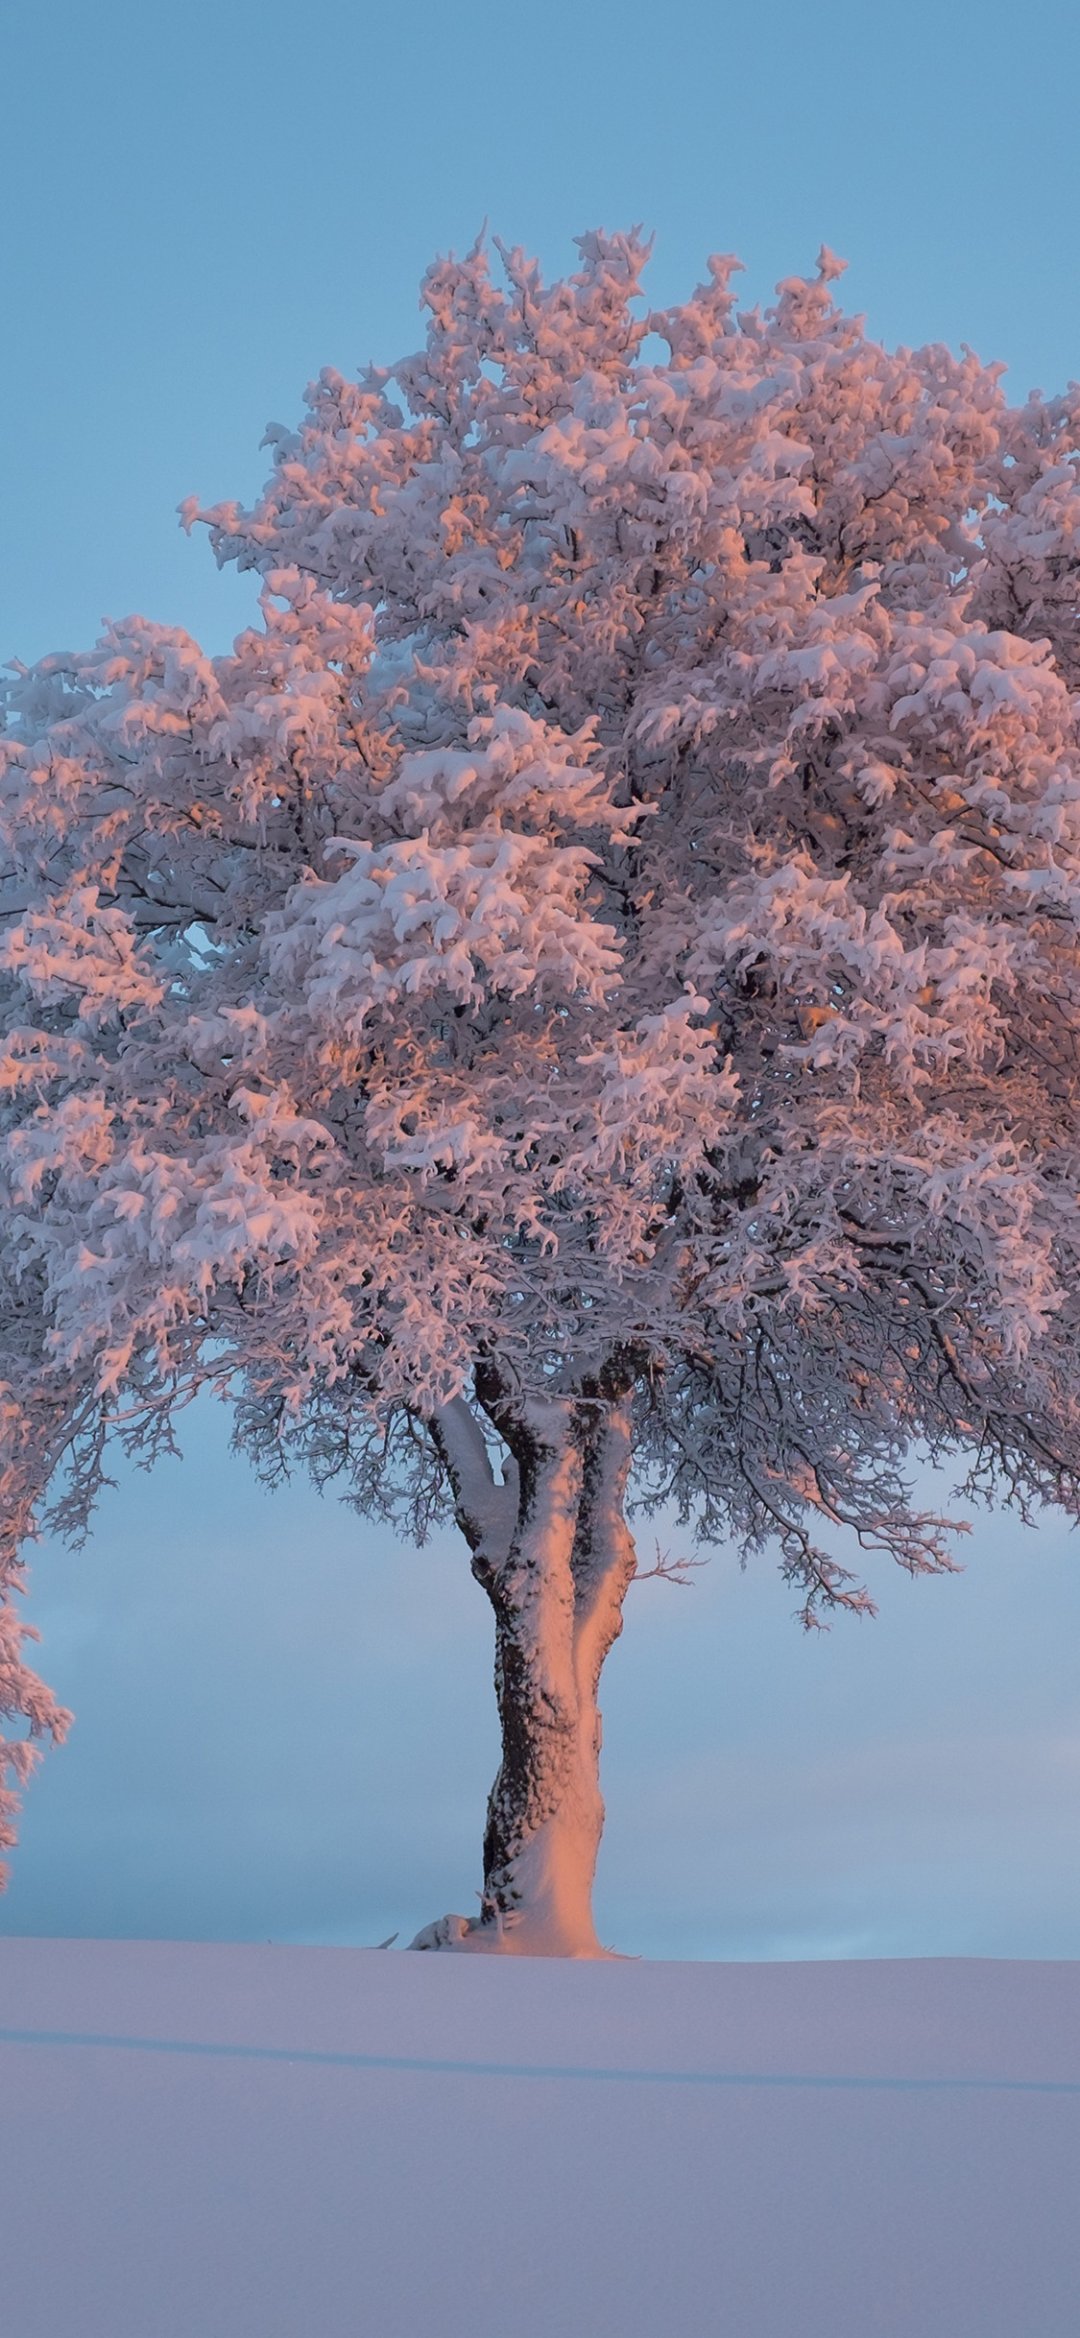 描写雪后大树的雪景图片